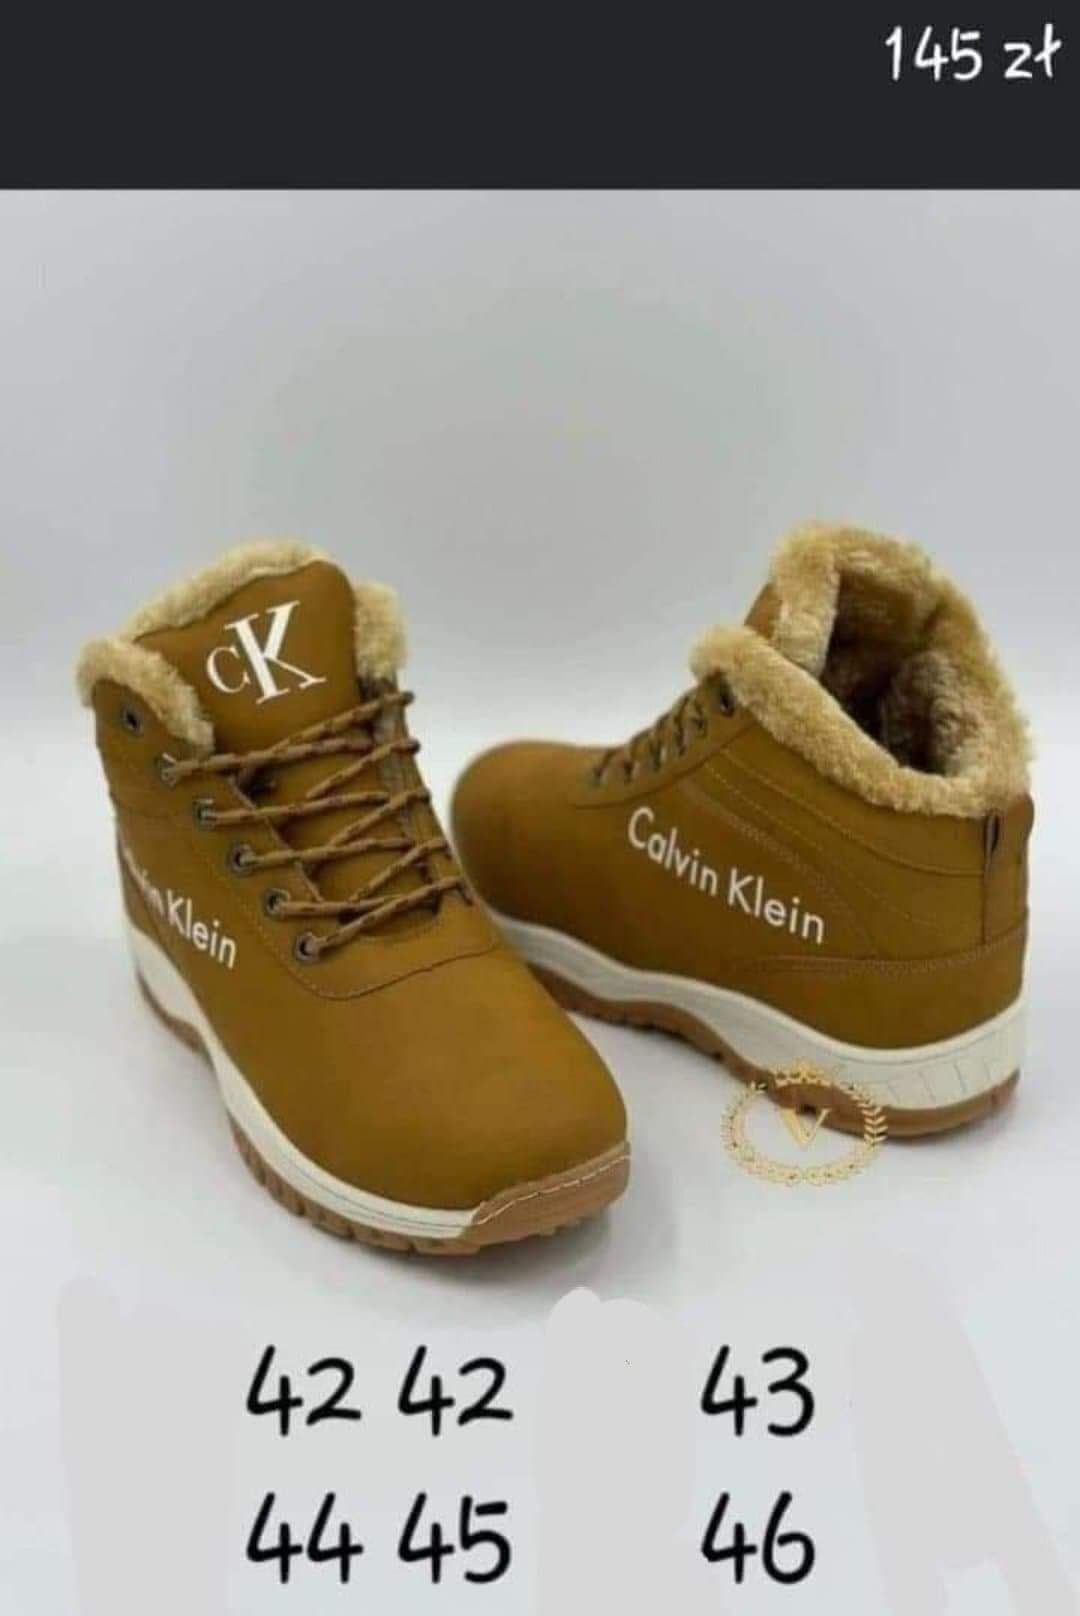 Nowe buty męskie zimowe ocieplane 41-46 różne modele.